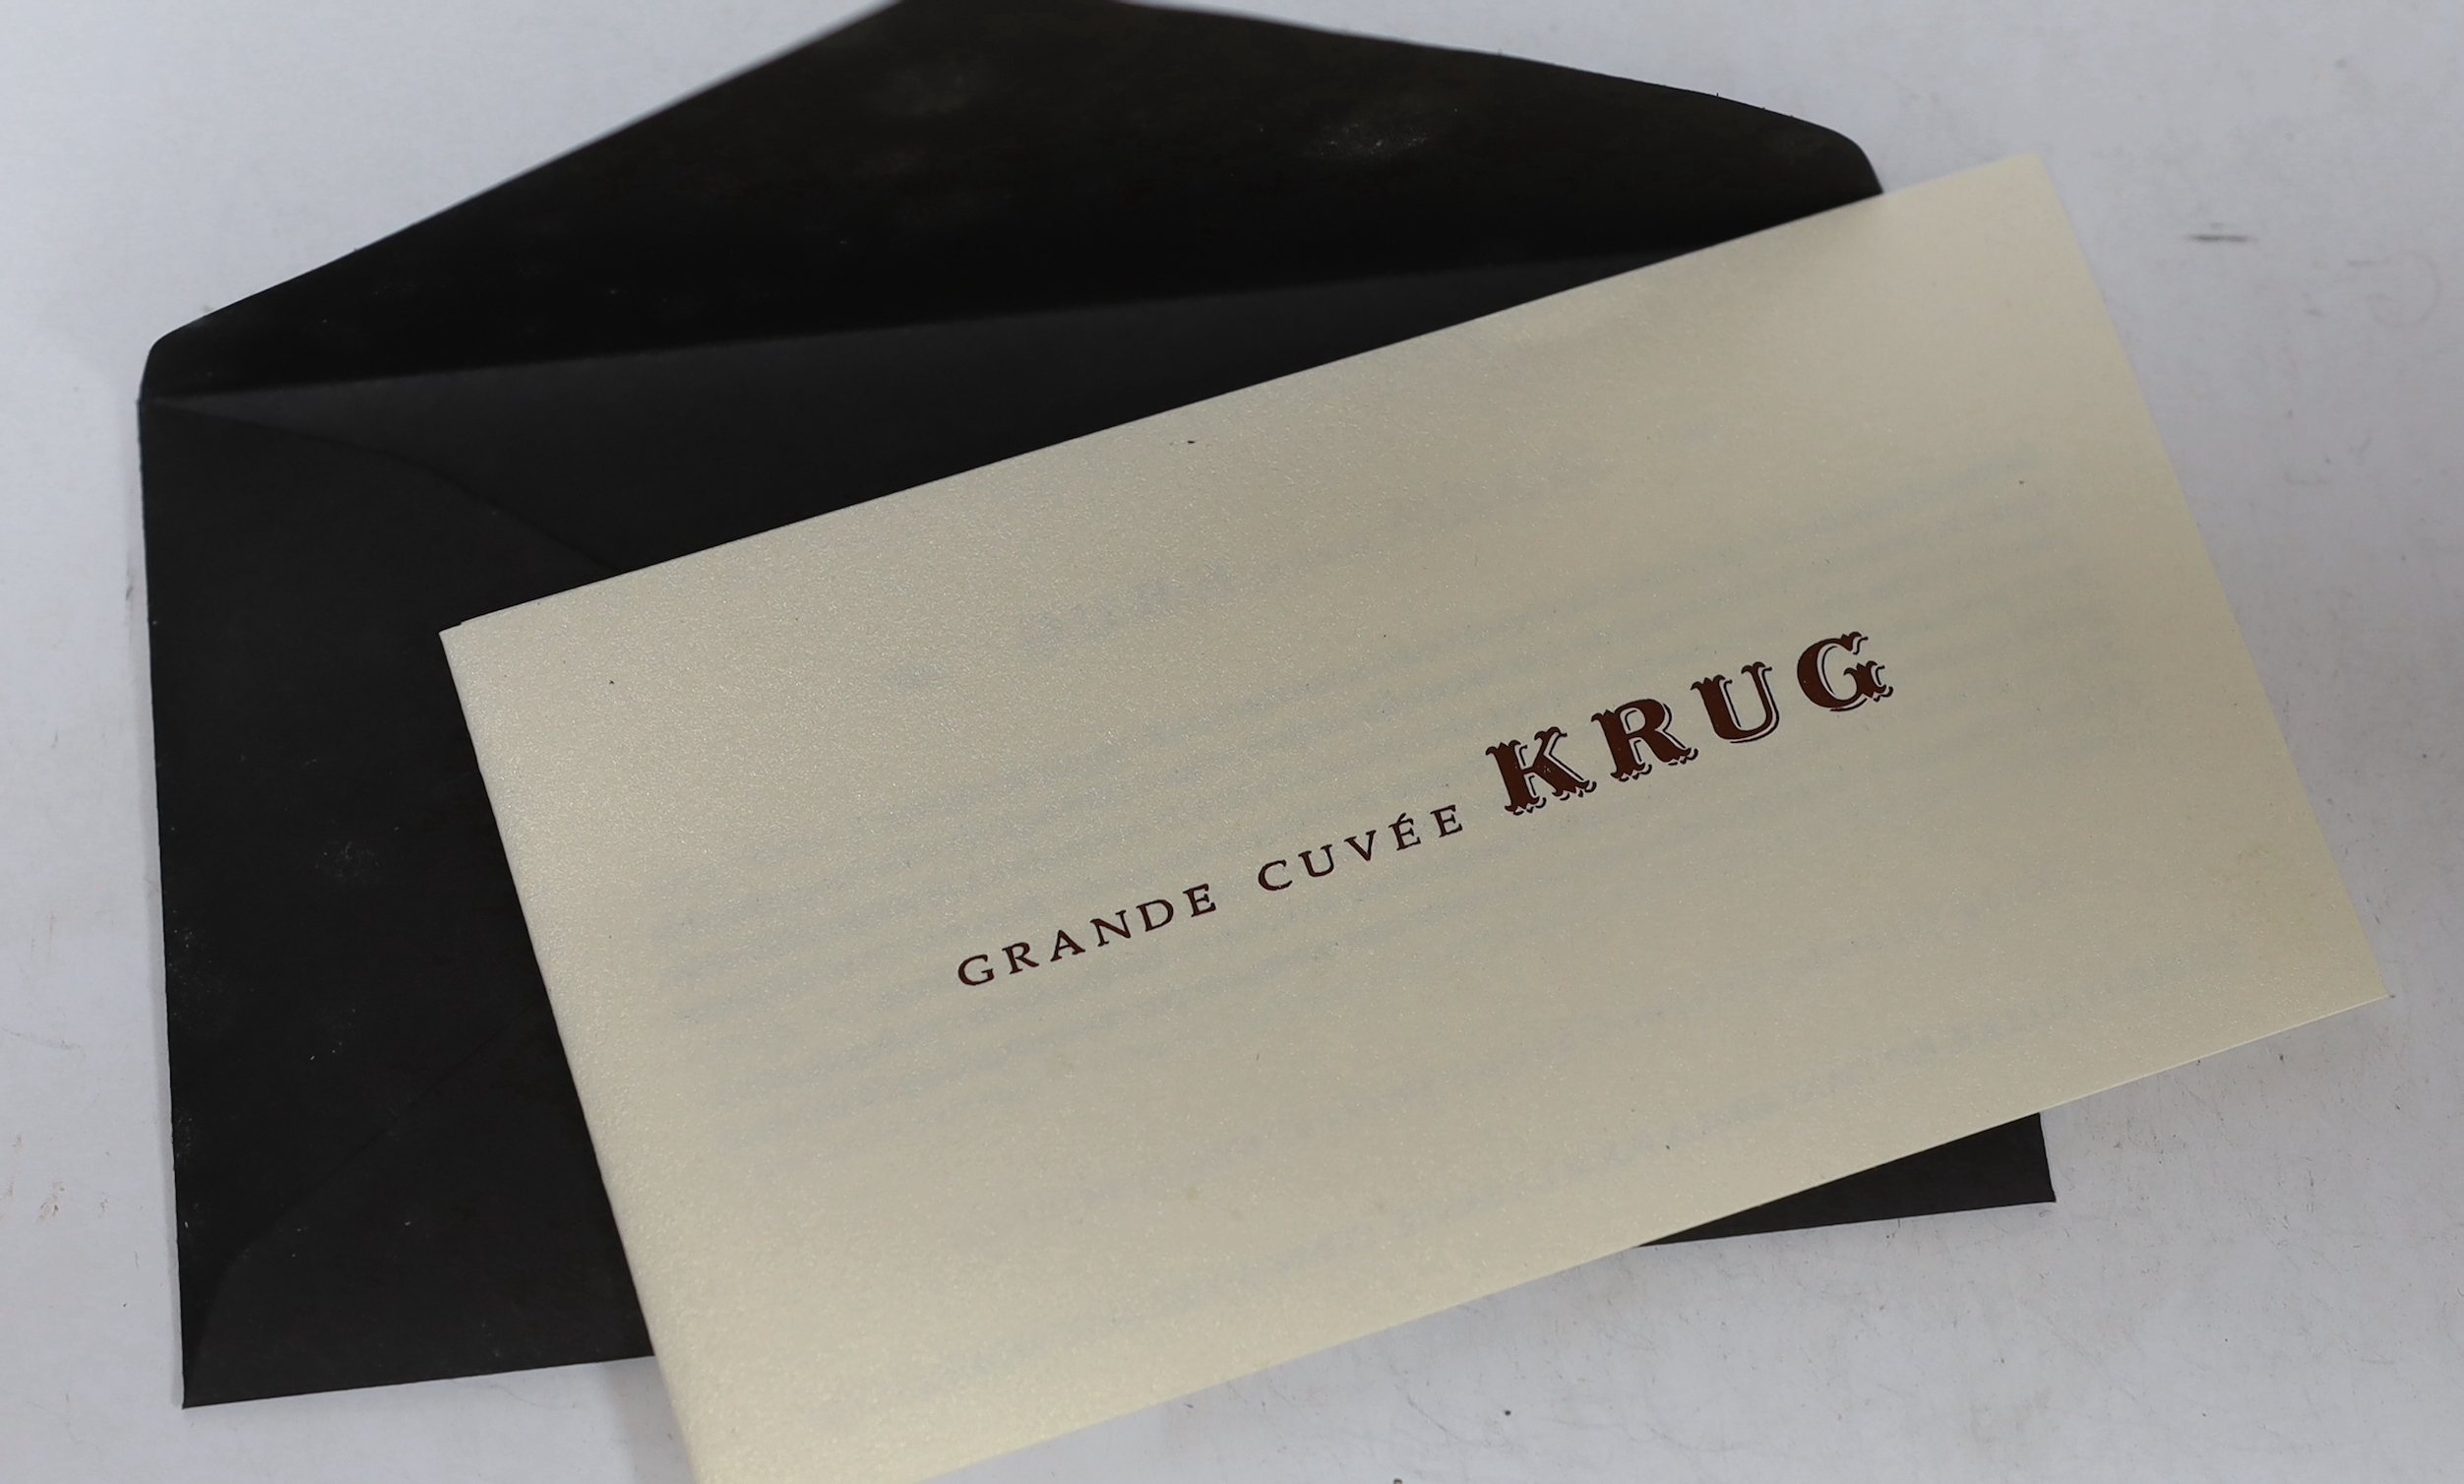 A bottle of Krug Grande Cuvee Champagne